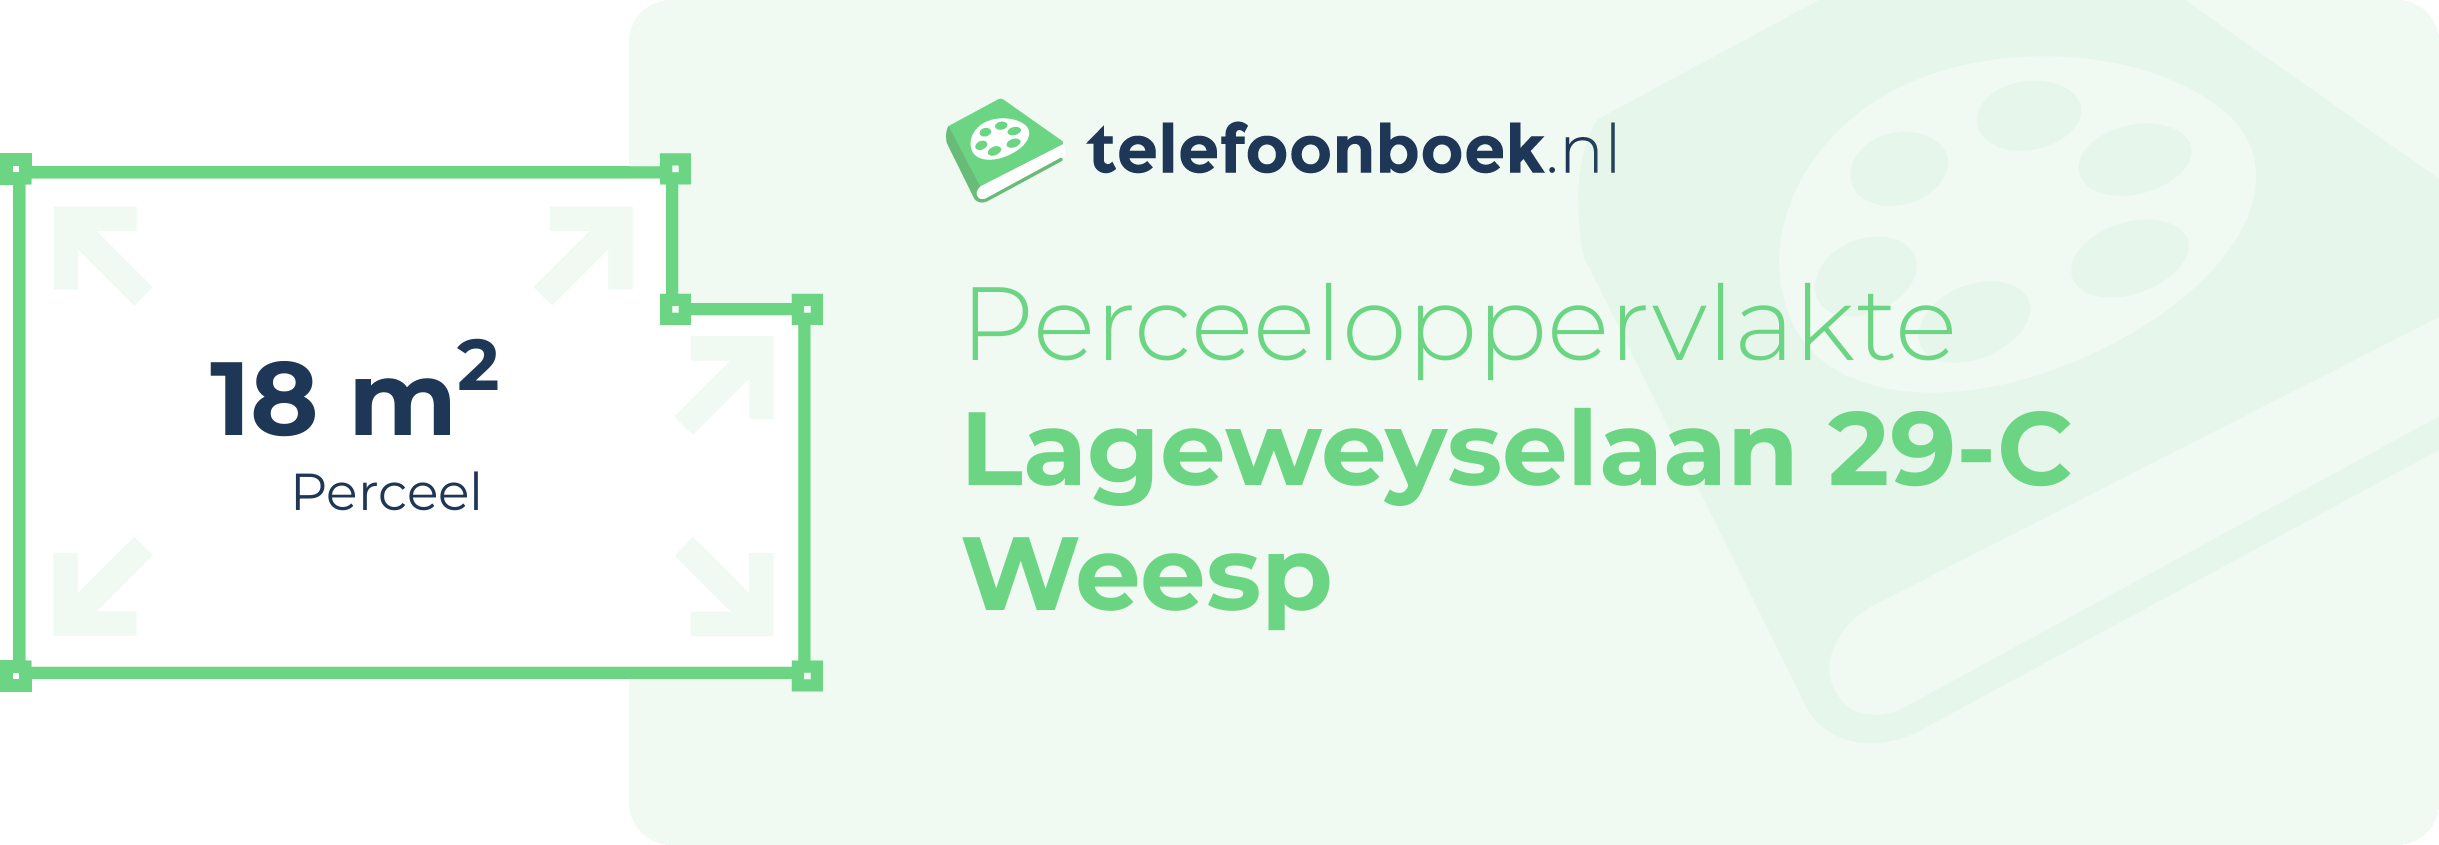 Perceeloppervlakte Lageweyselaan 29-C Weesp